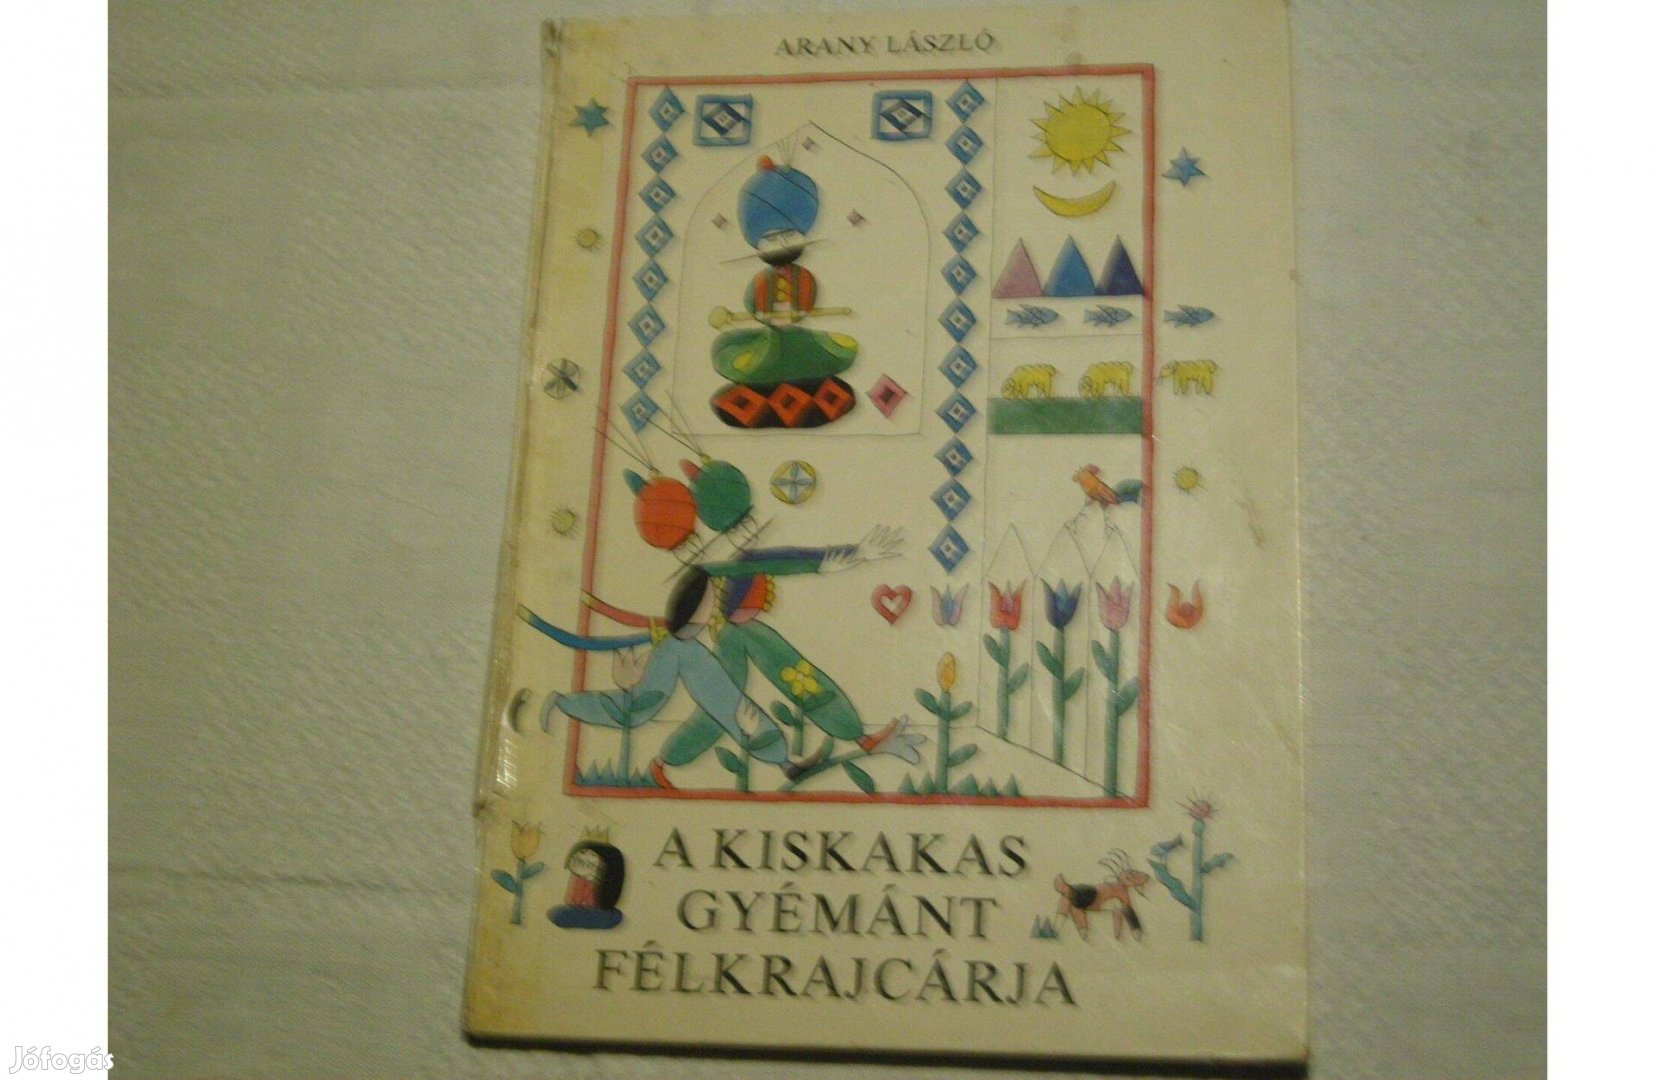 Arany László. A kiskakas gyémántfélkrajcárja.1978.régi könyvben 3 mese